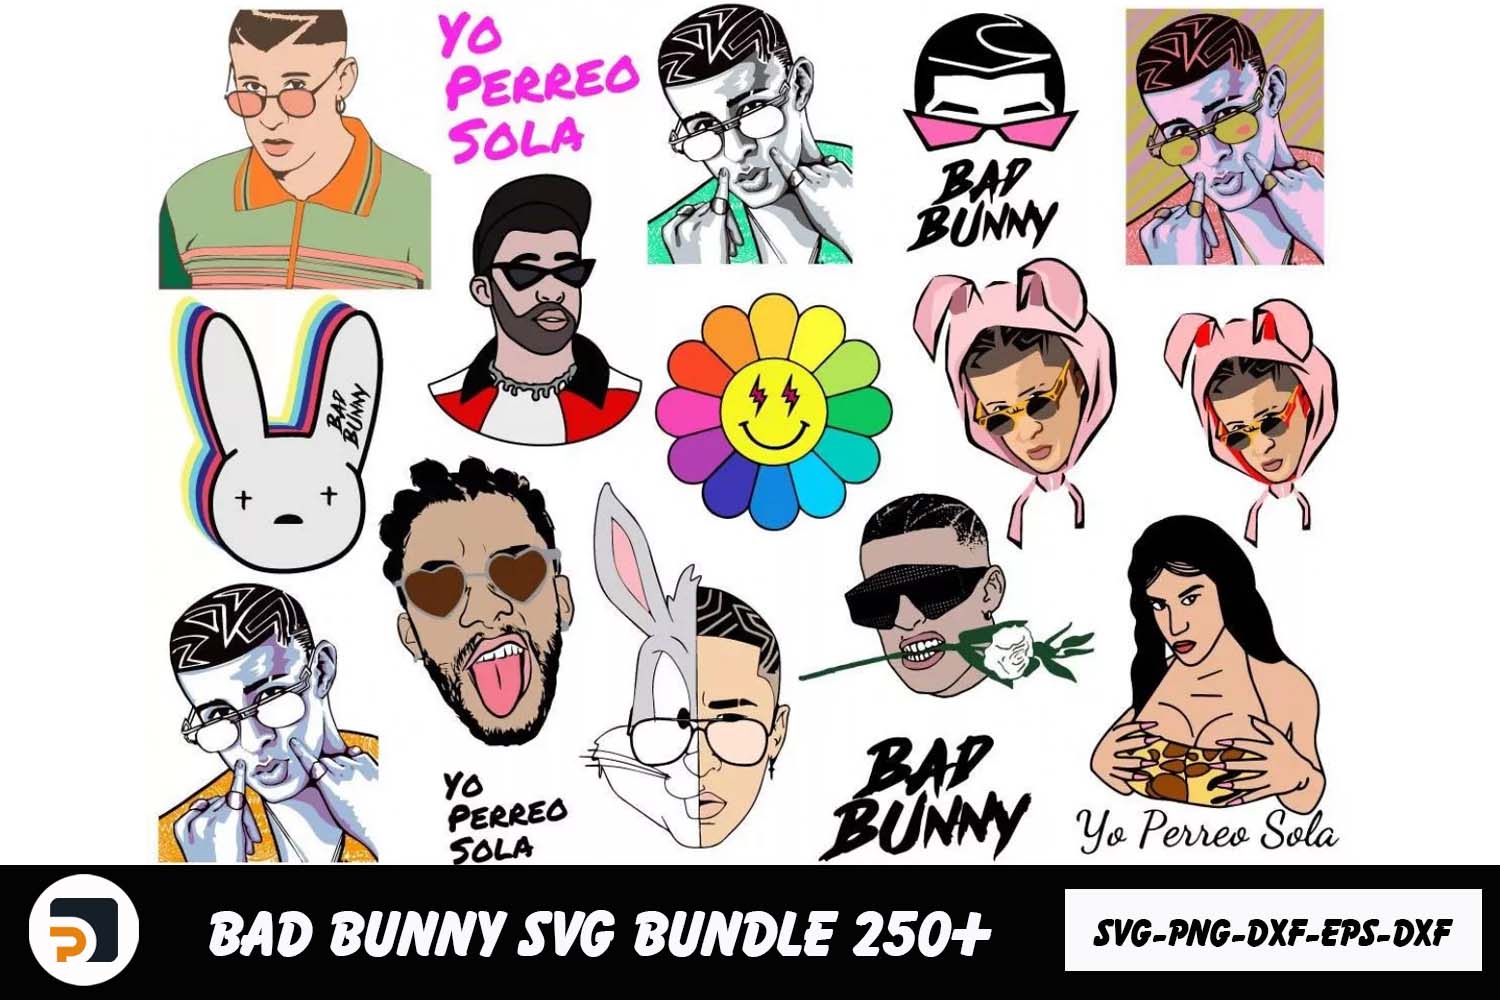 Bad Bunny SVG Bundle